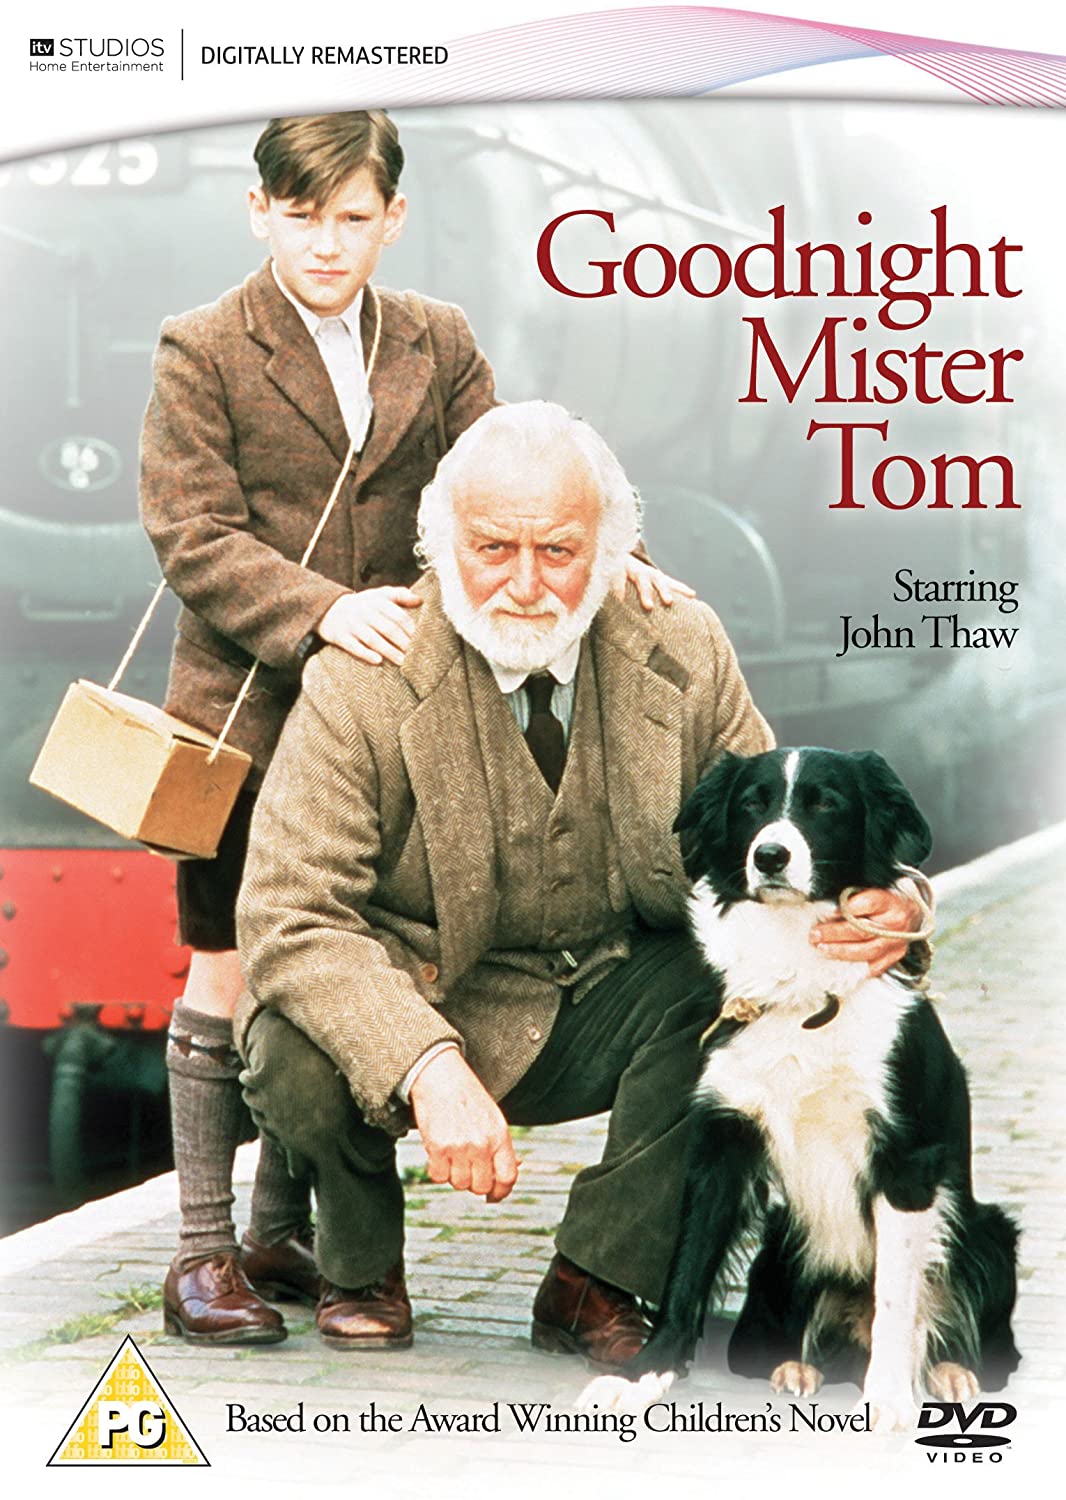 Goodnight Mister Tom [1998] - Drama/Adaptation [DVD]